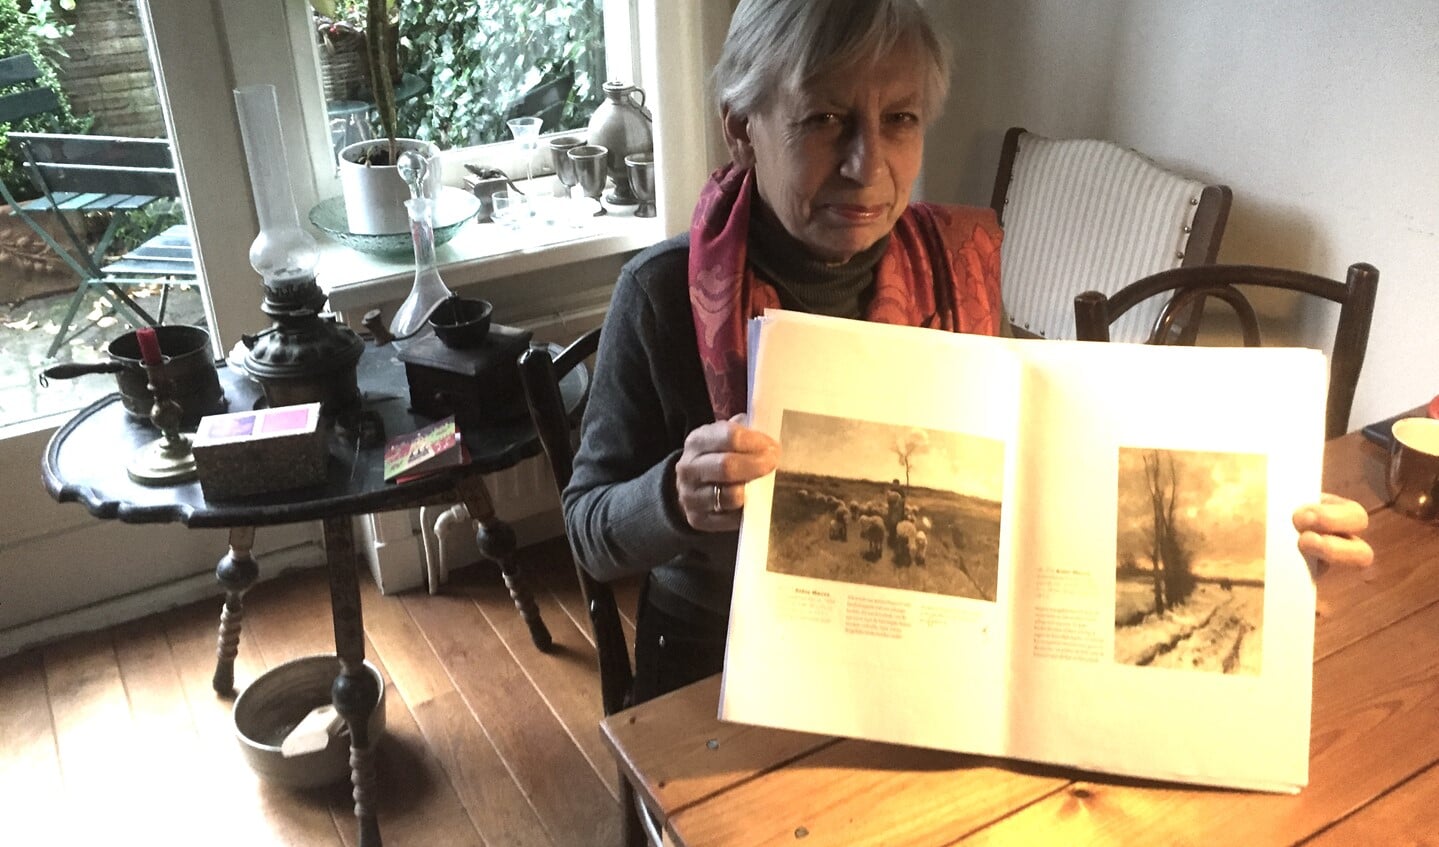 Auteur en kunsthistoricus Emke Raassen toont enkele pagina's uit het manuscript voor het boek over de Larense School dat ze schreef.